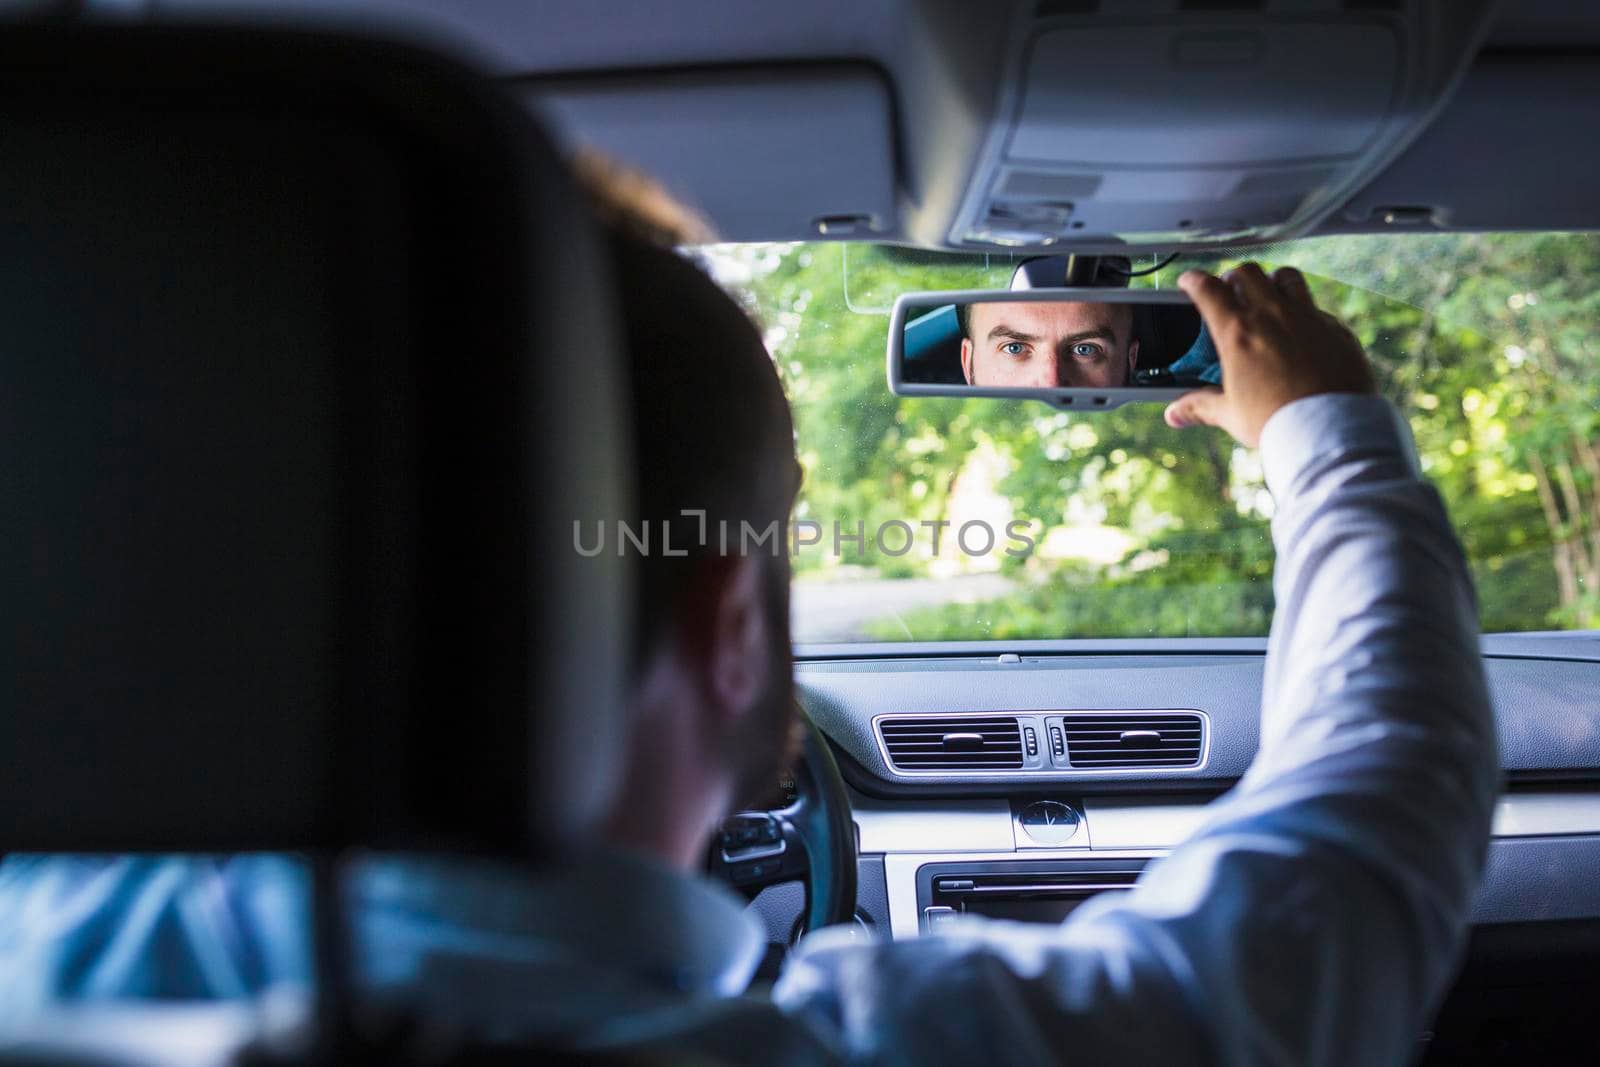 man sitting inside car adjusting rear view mirror